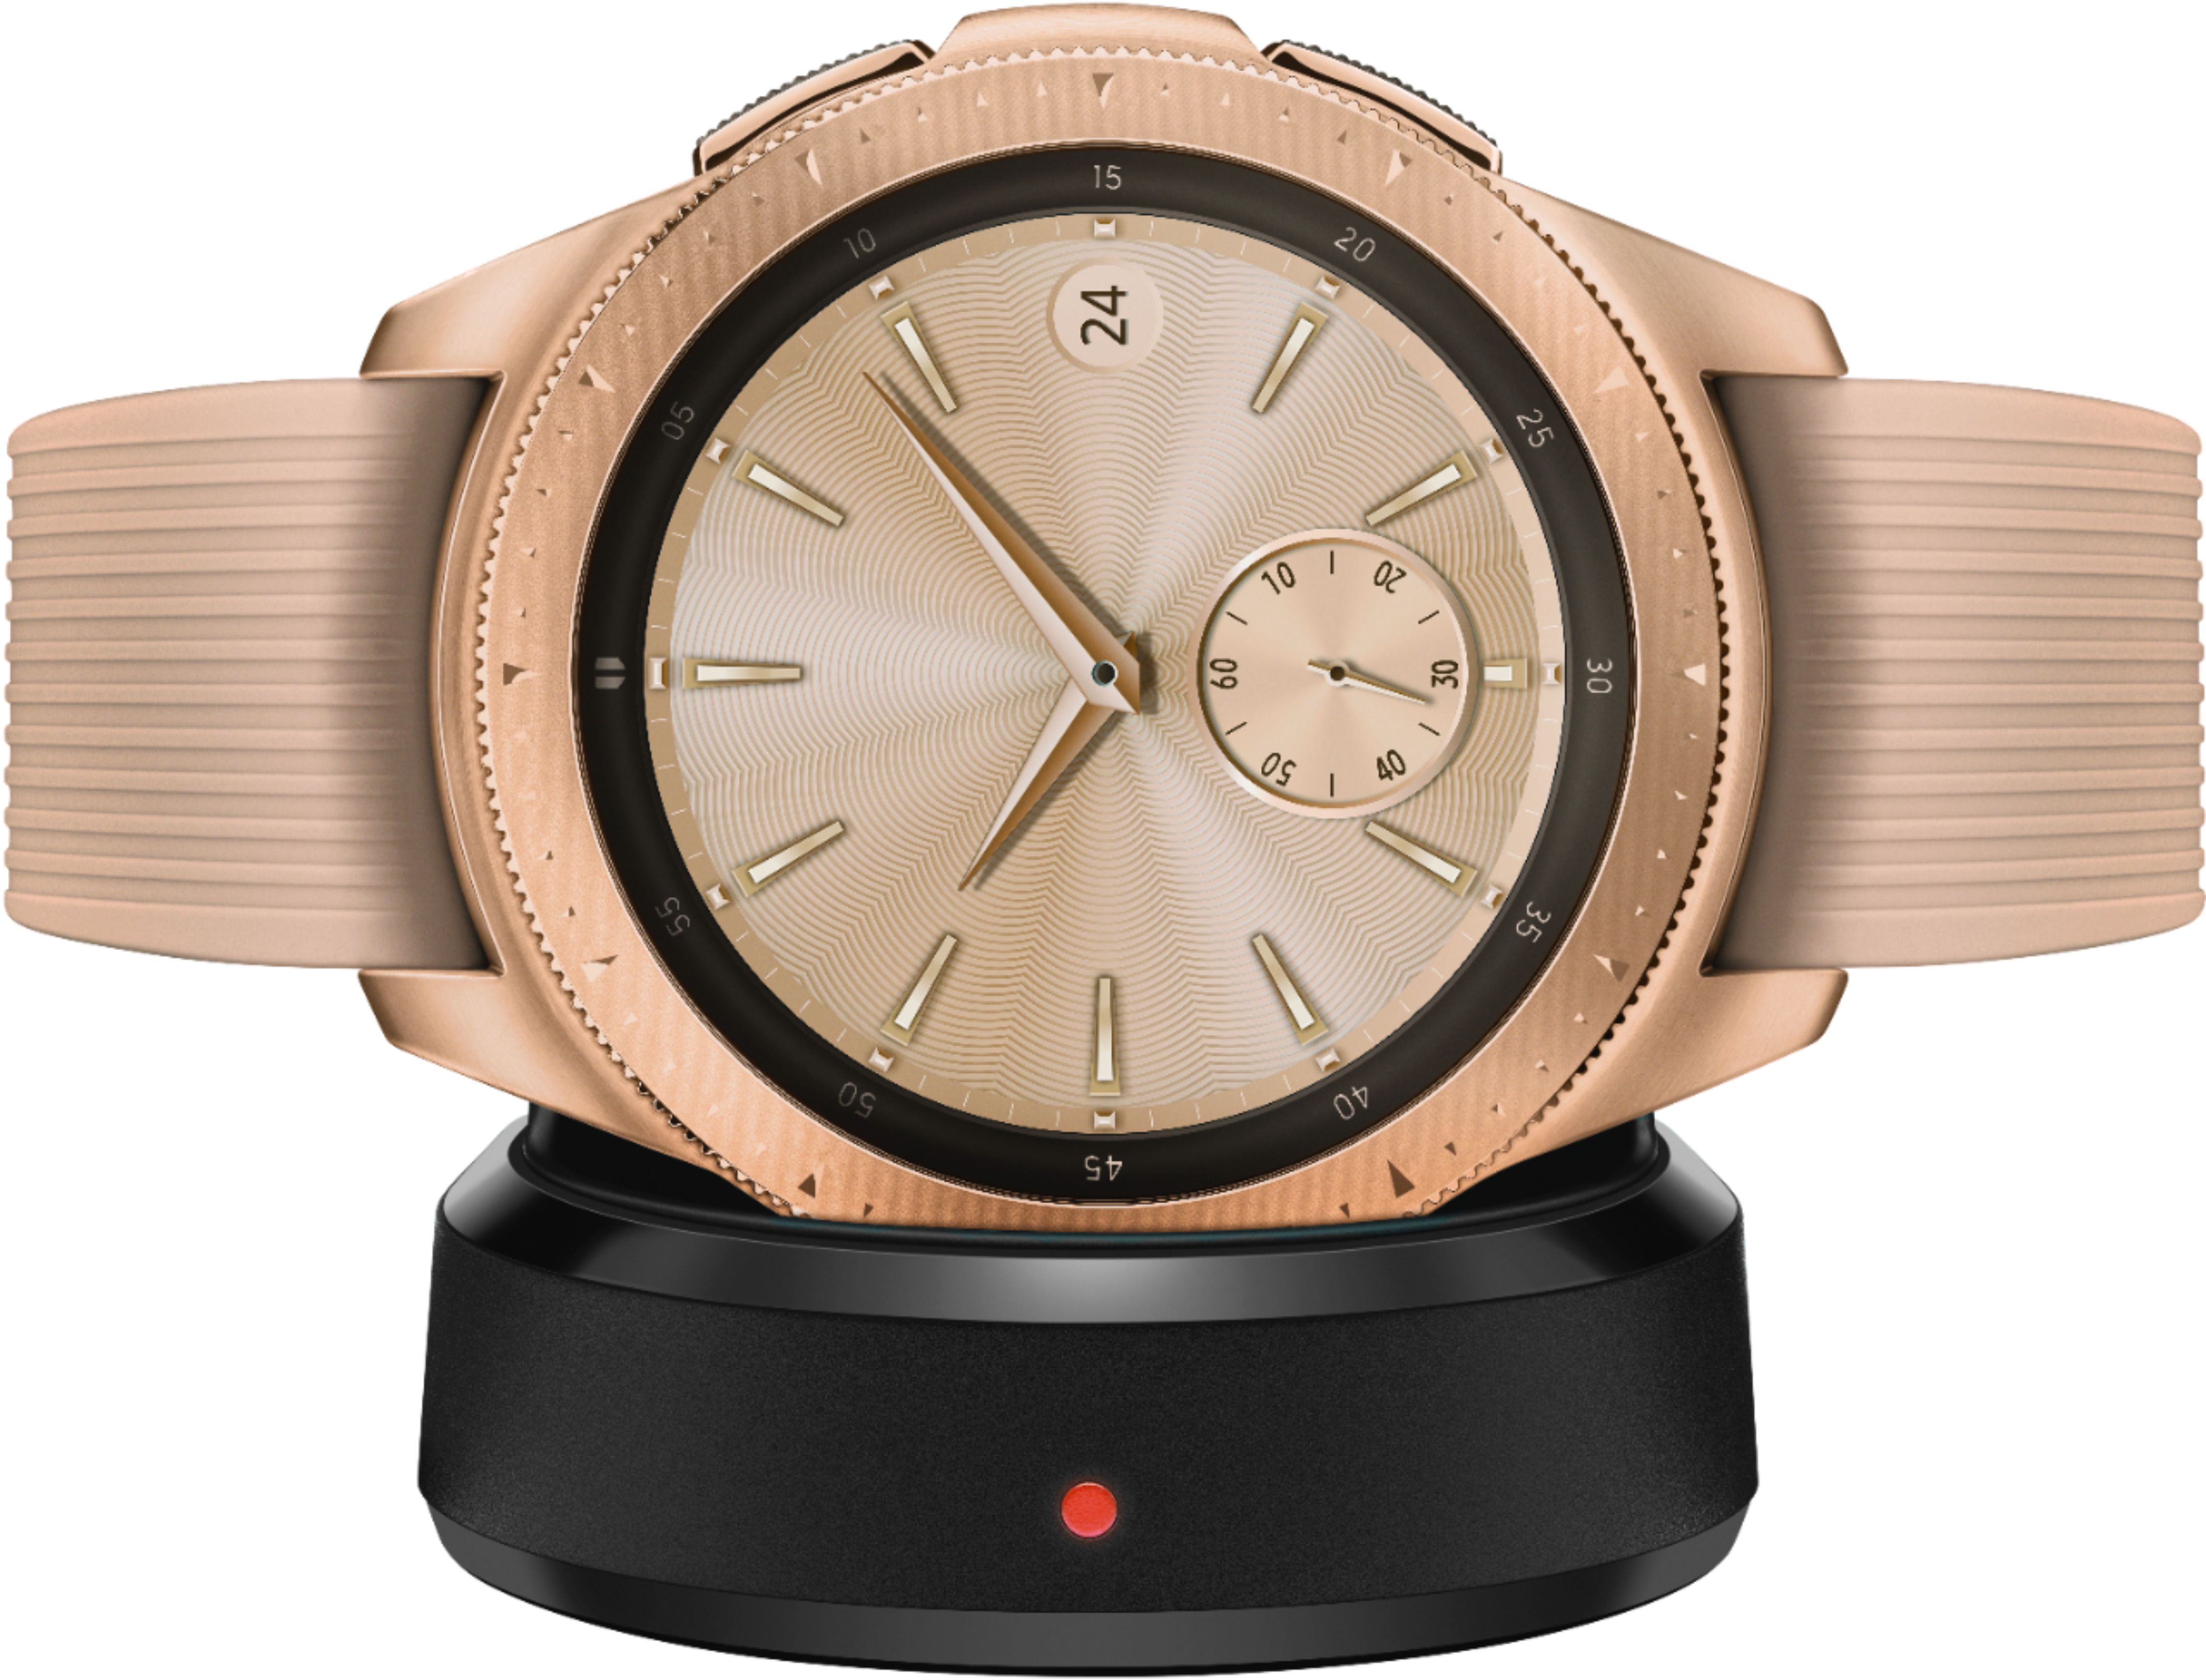 Best Buy: Samsung Galaxy Watch Smartwatch 42mm Stainless Steel LTE